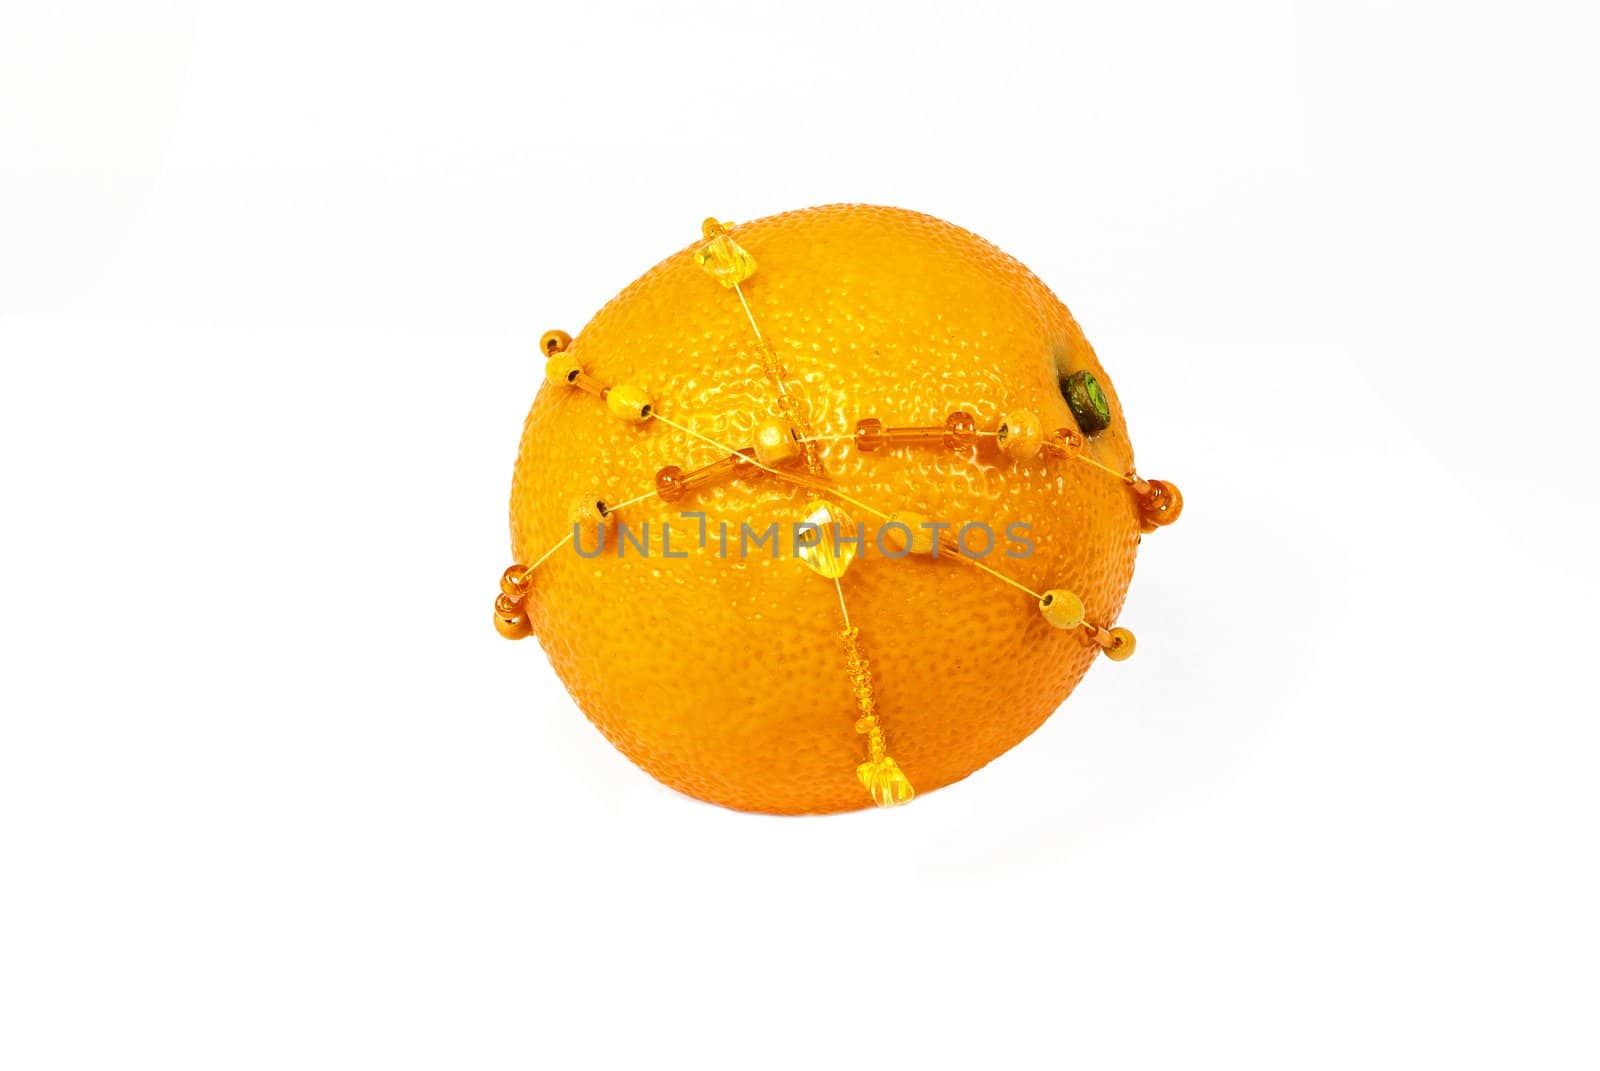 Single fresh orange decorated with amber bracelets